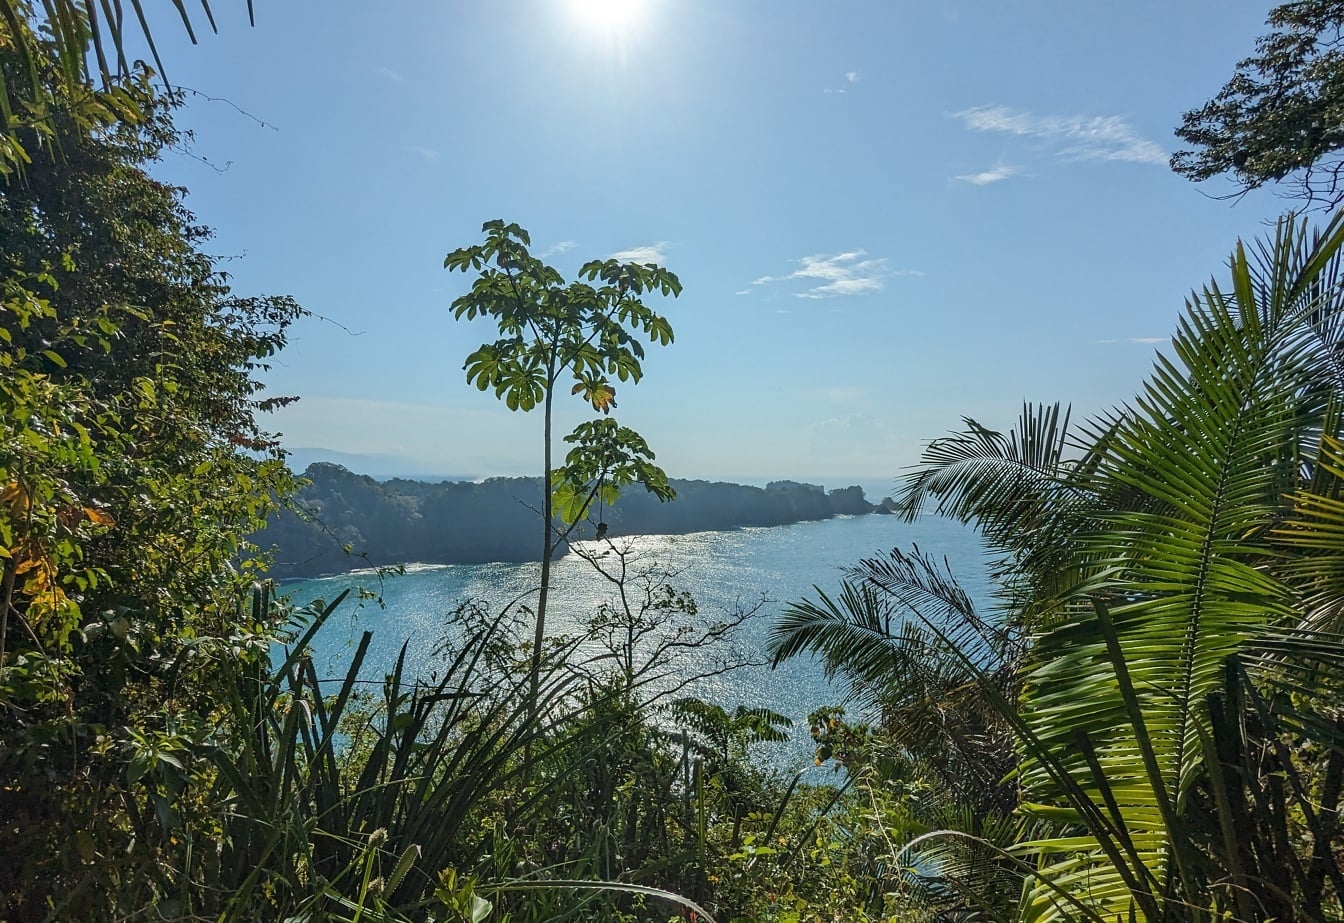 Panoramiczny widok na lagunę ze szczytu wzgórza z tropikalnymi drzewami i roślinami